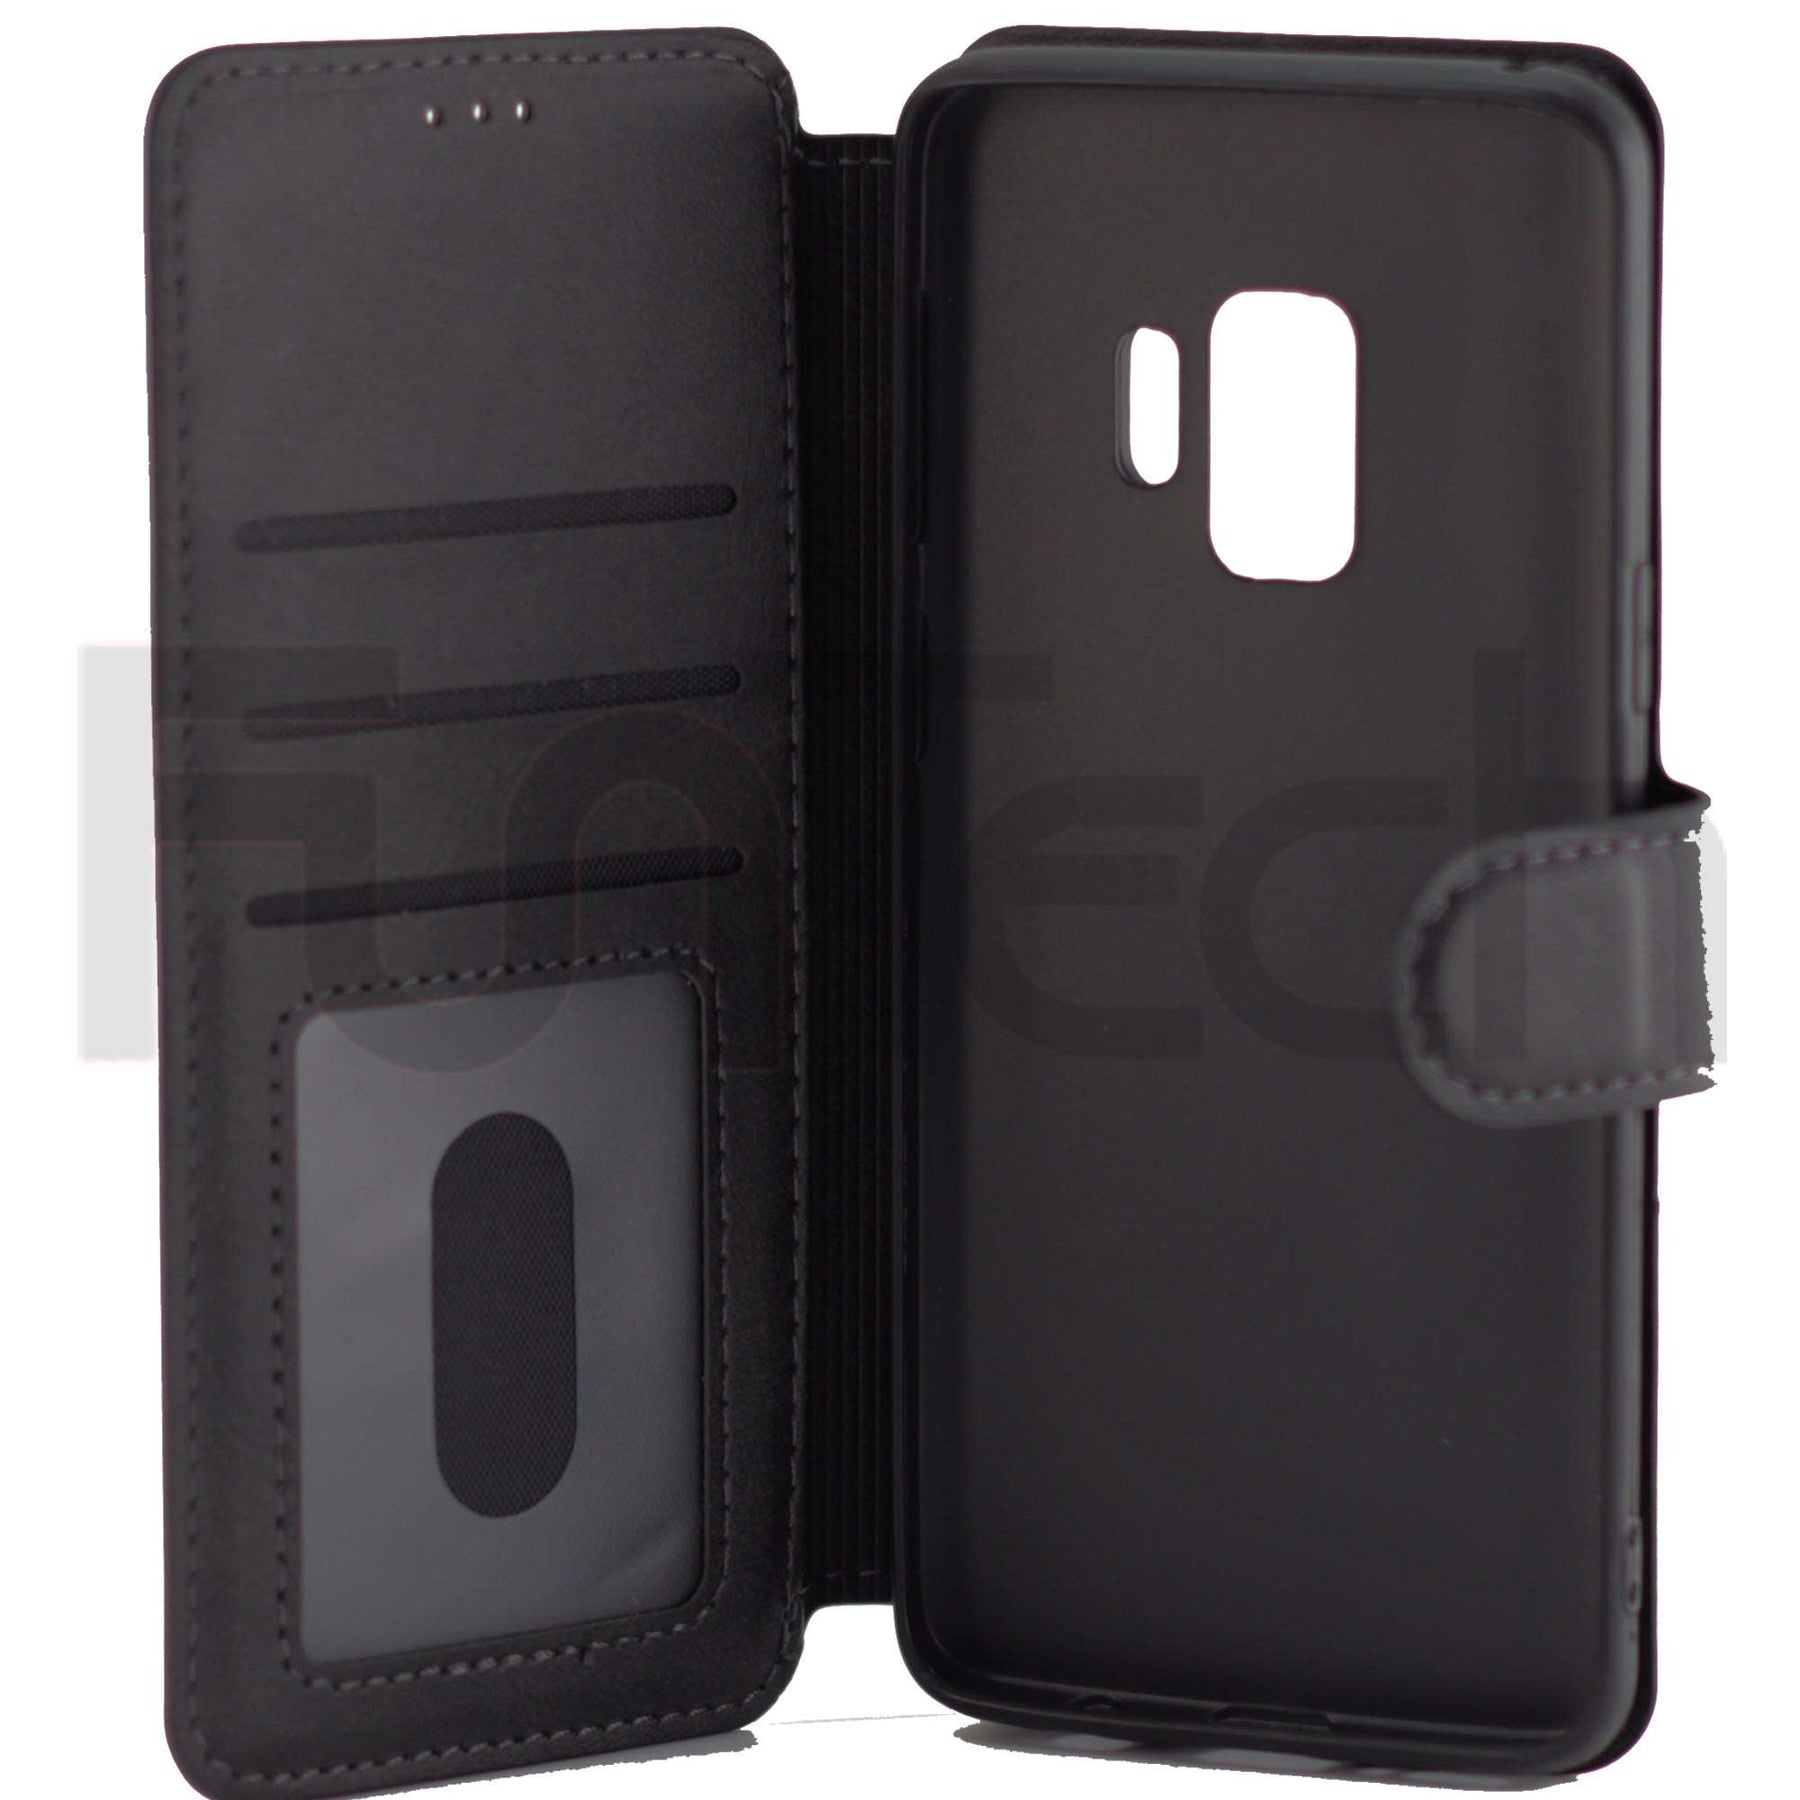 Samsung S9, Leather Wallet Case, Color Black.